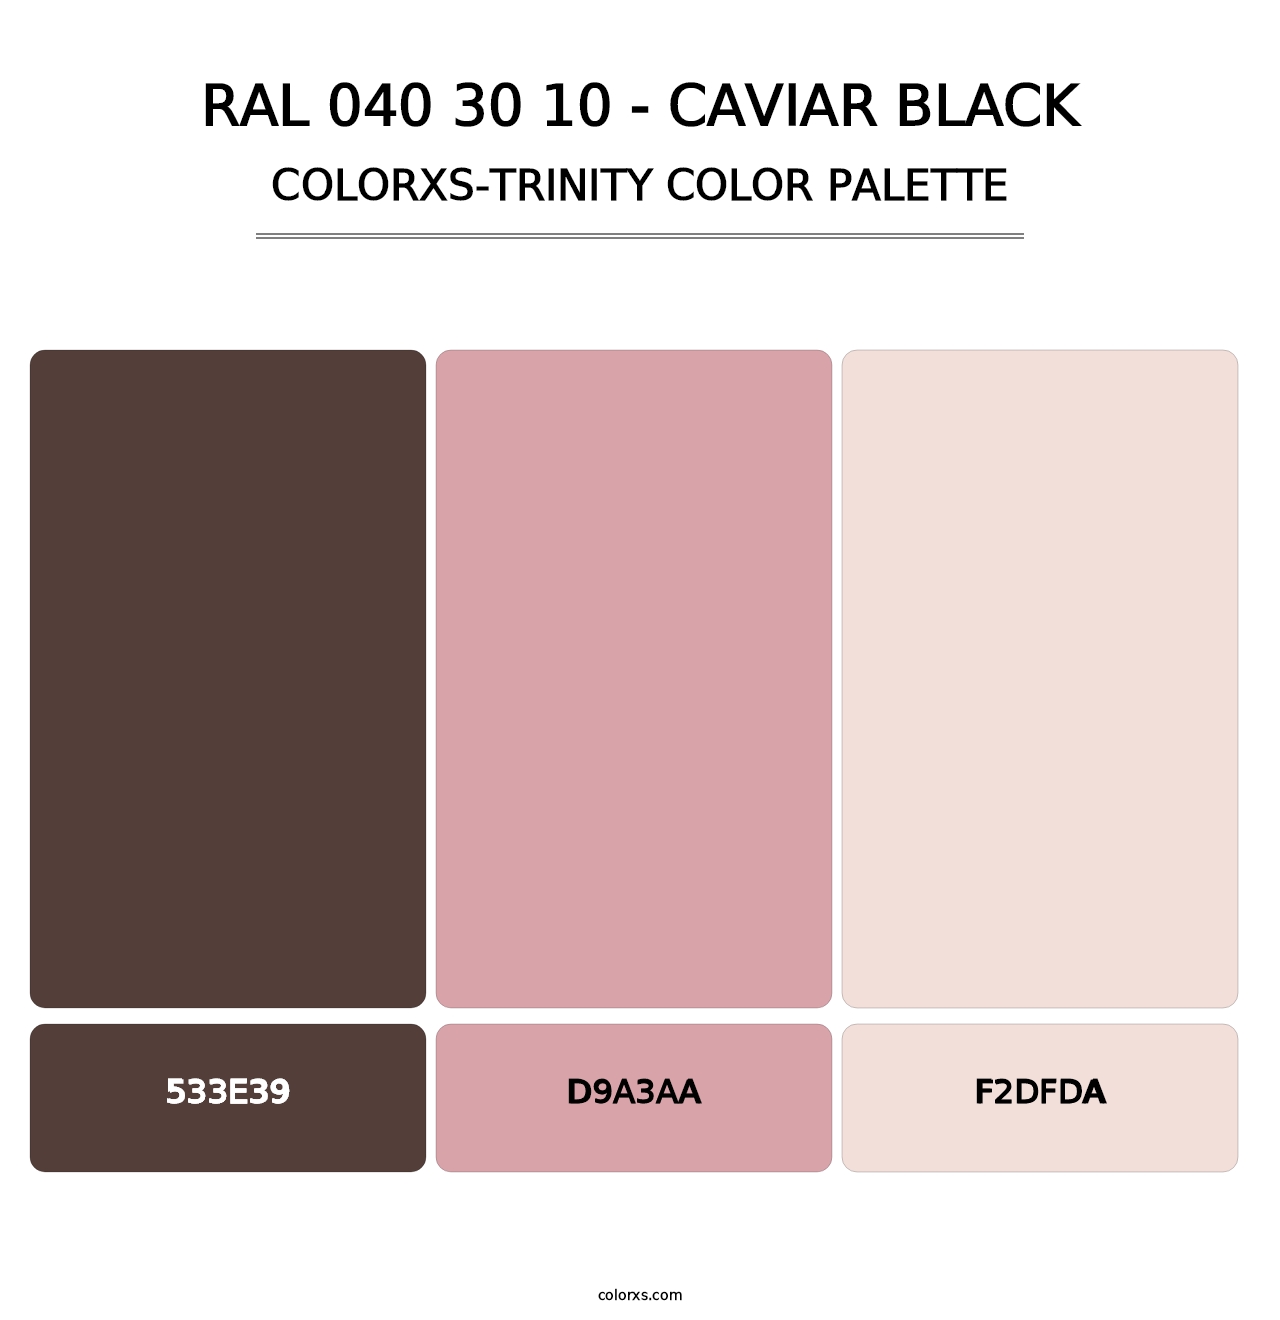 RAL 040 30 10 - Caviar Black - Colorxs Trinity Palette